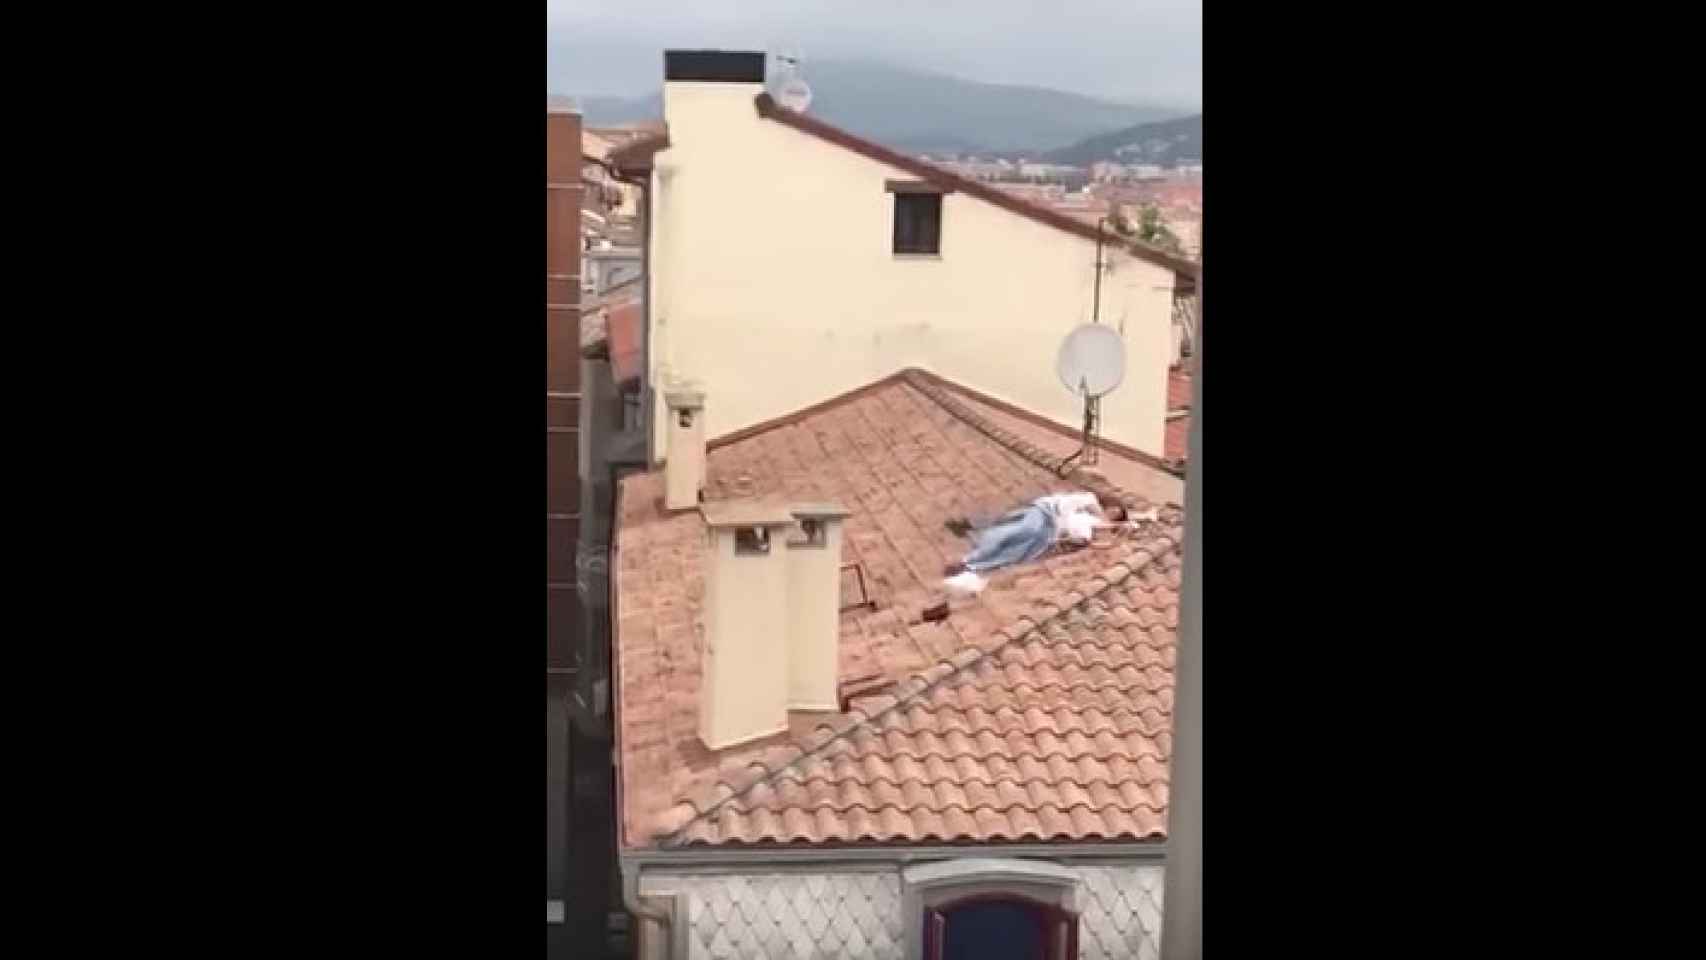 La pareja en el tejado mientras mantenía relaciones sexuales / Youtube